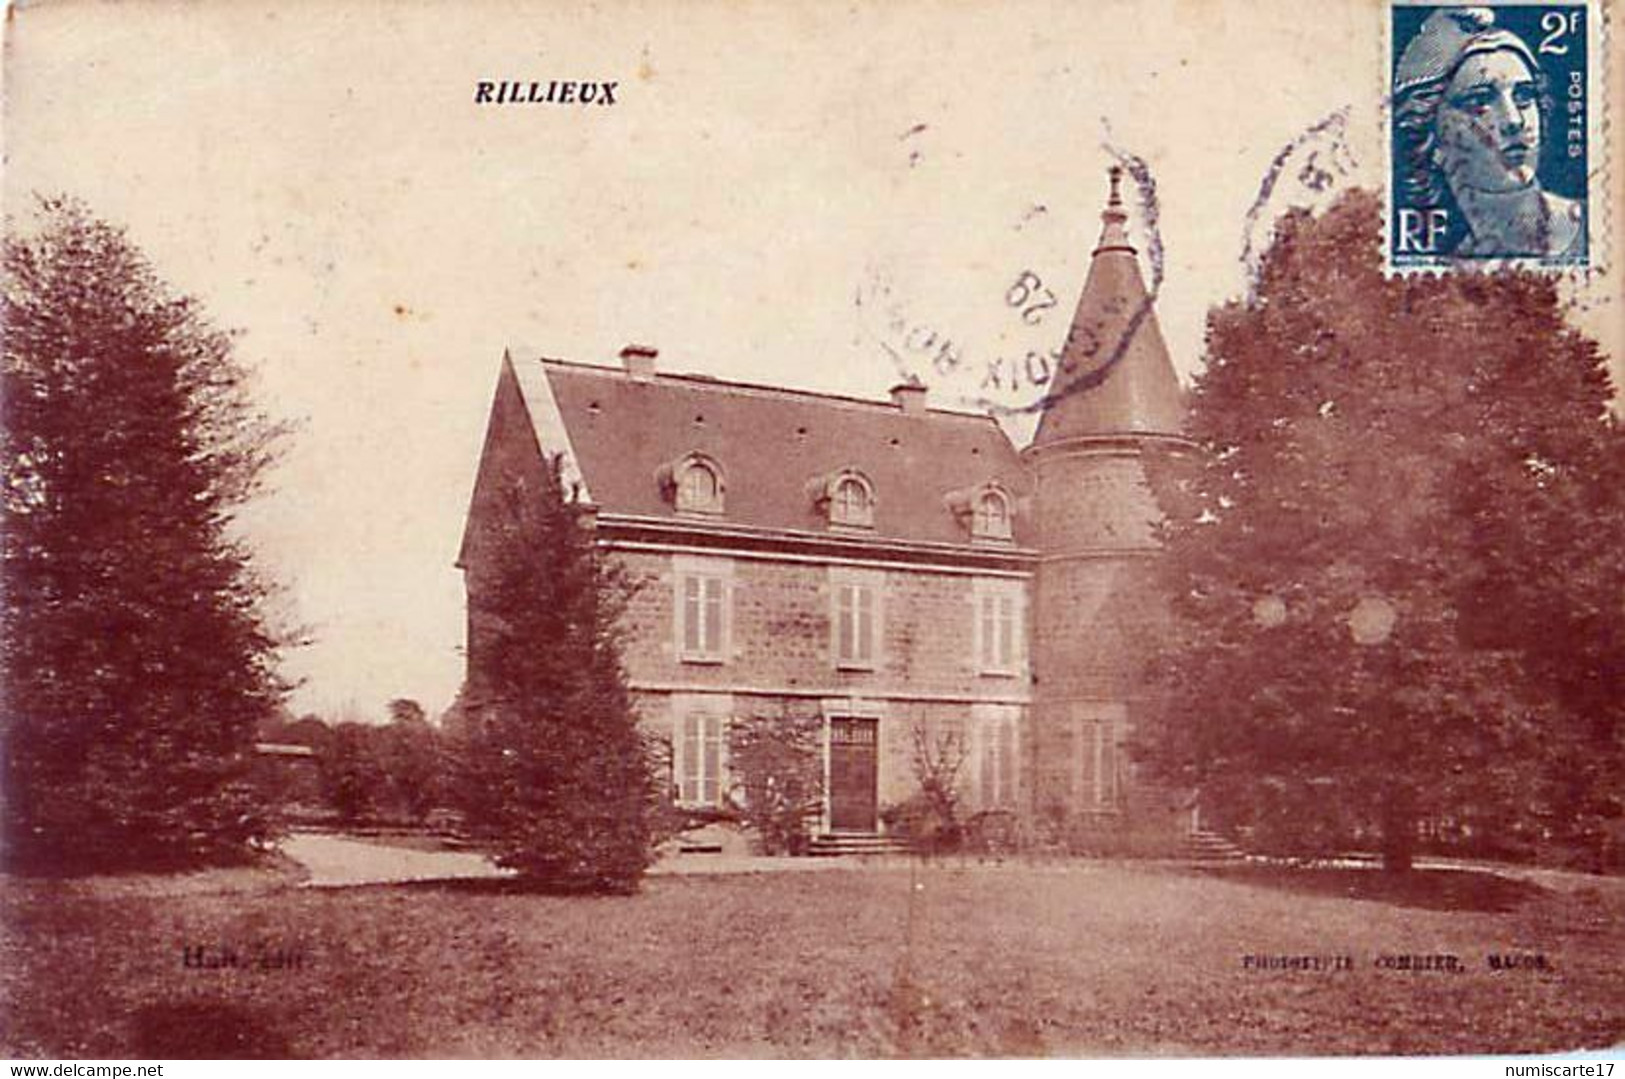 Cpa RILLIEUX 69 Château Des Nobles - Rillieux La Pape